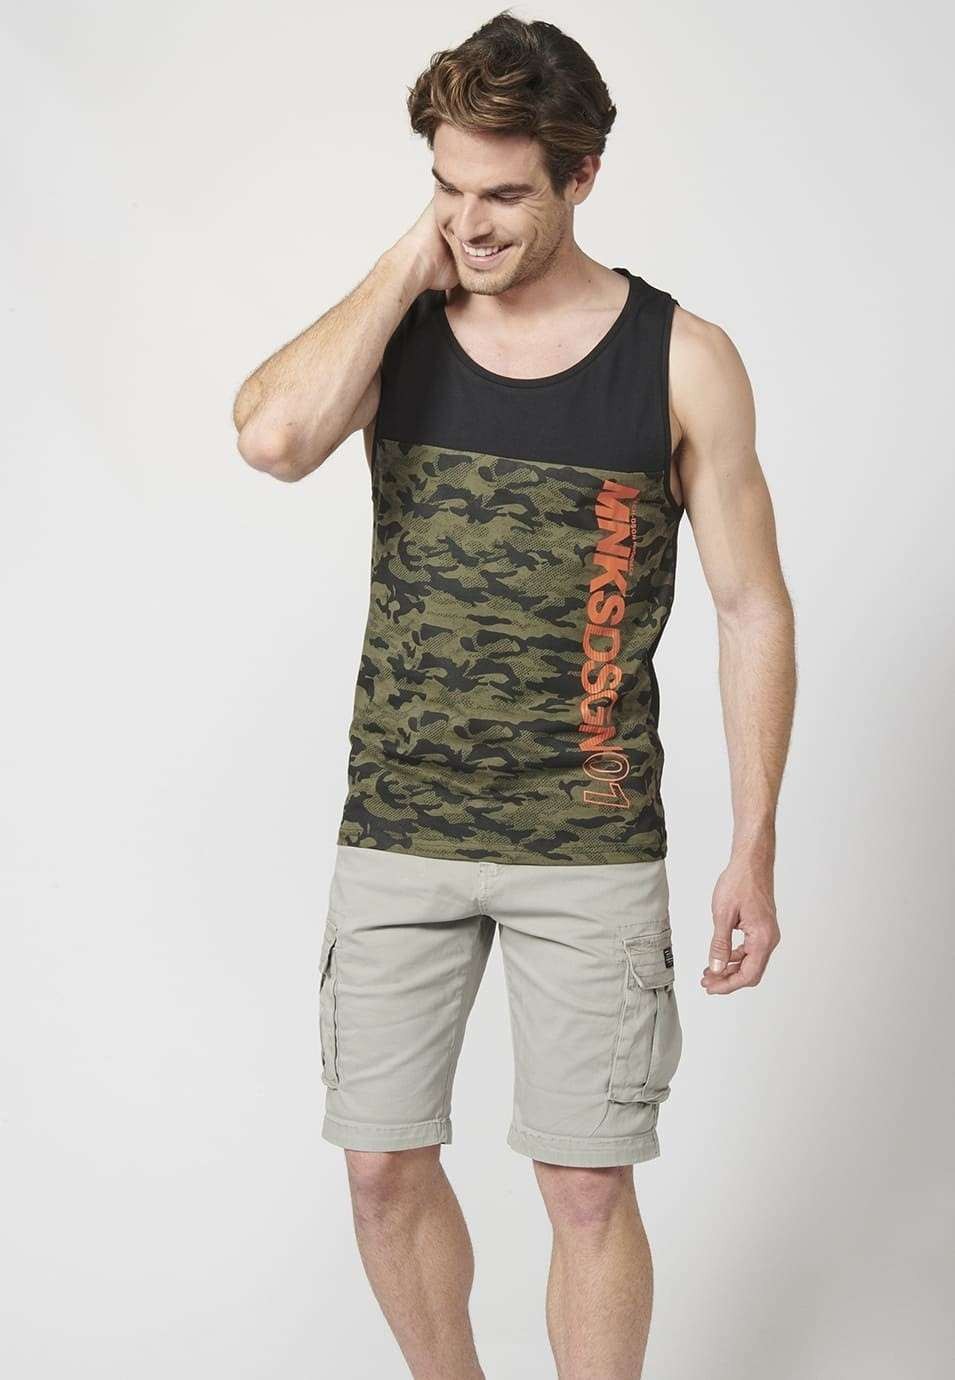 Camiseta sin mangas con de Tirantes estampado de camuflaje para Hombre 2